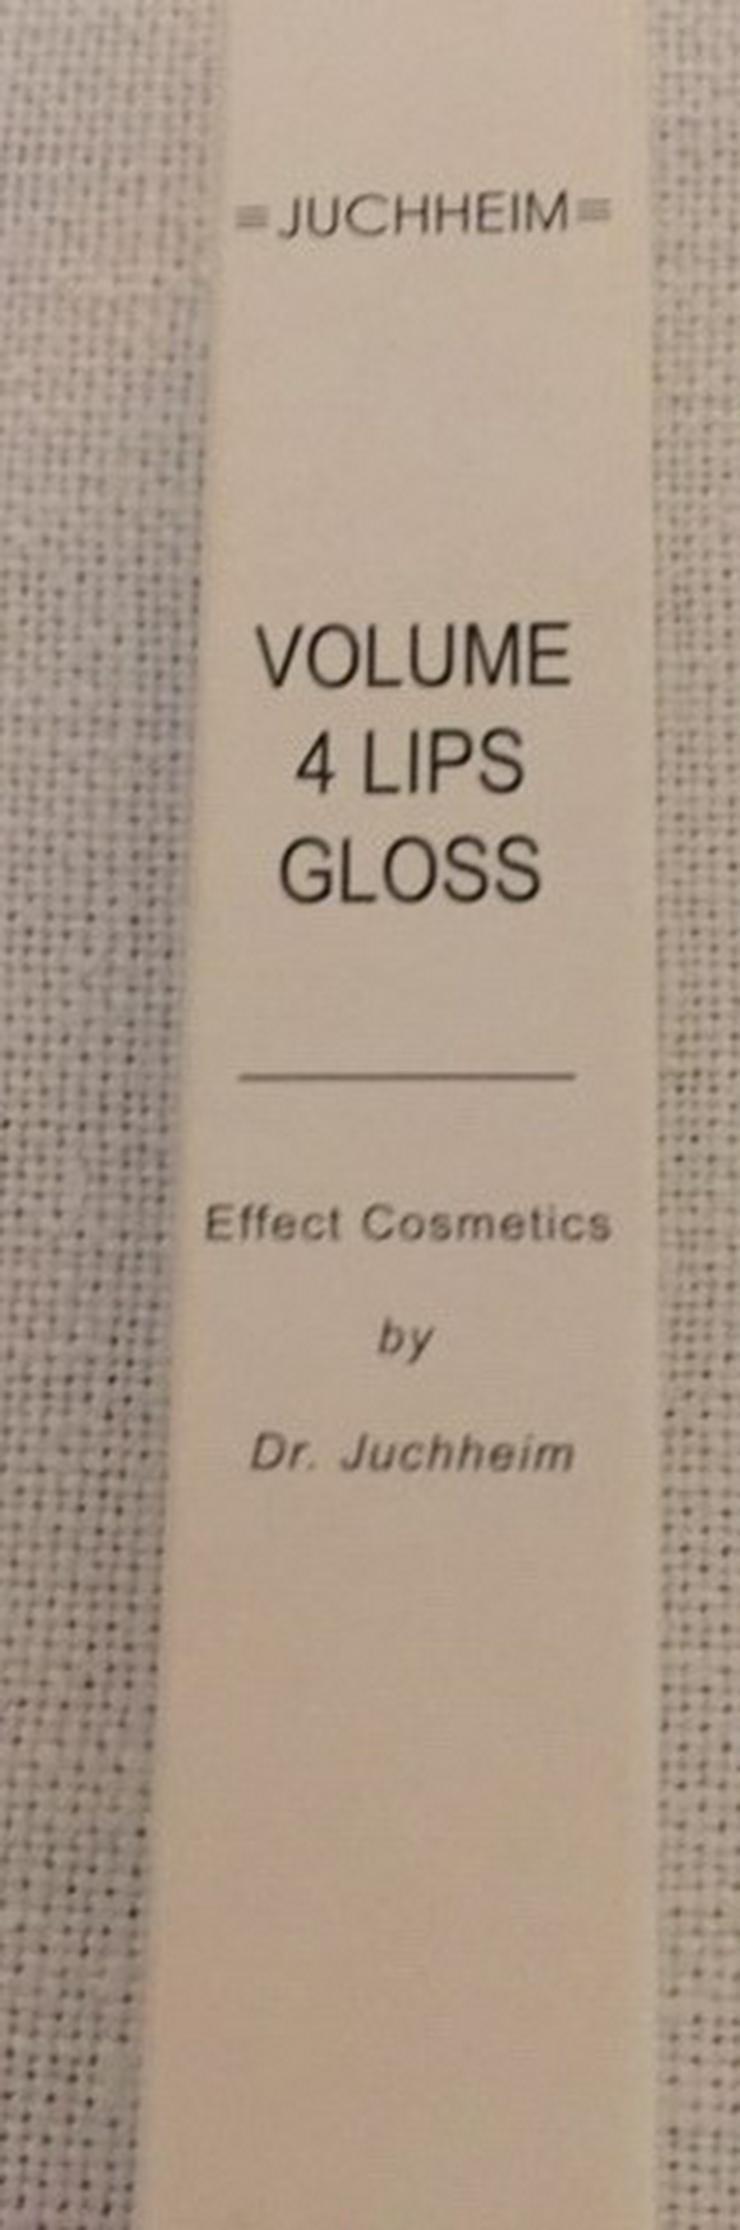 Volume 4 Lips Gloss - Lippen - Bild 1